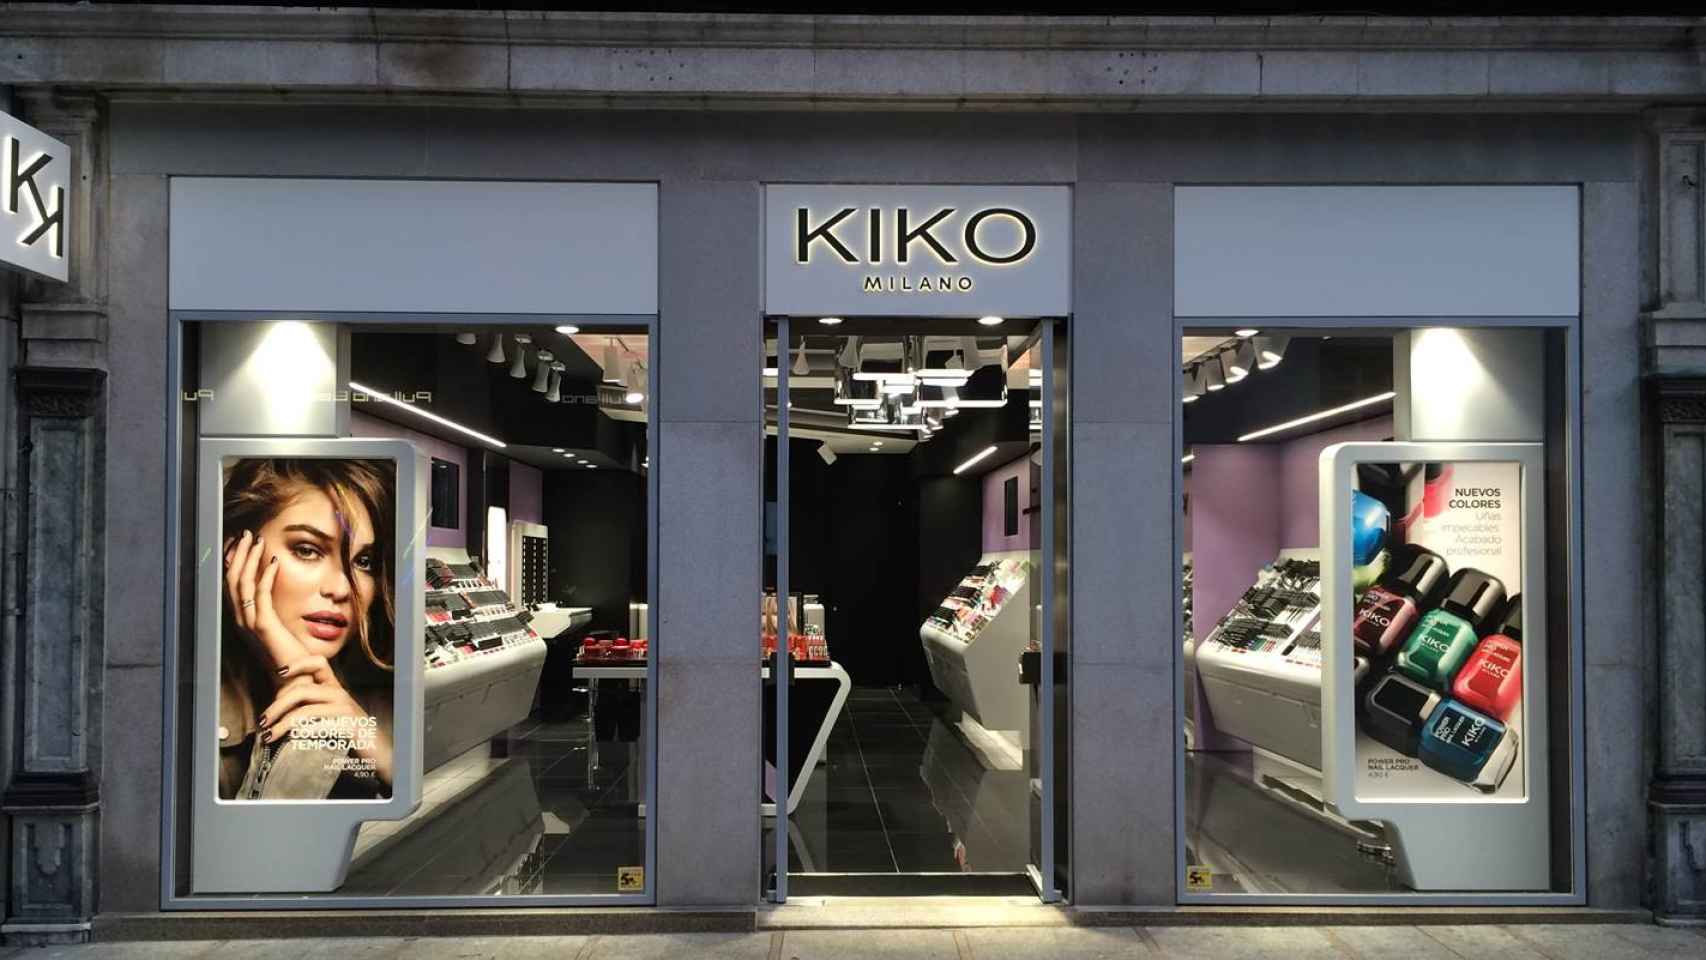 Kiko cuenta con 120 puntos de venta en España